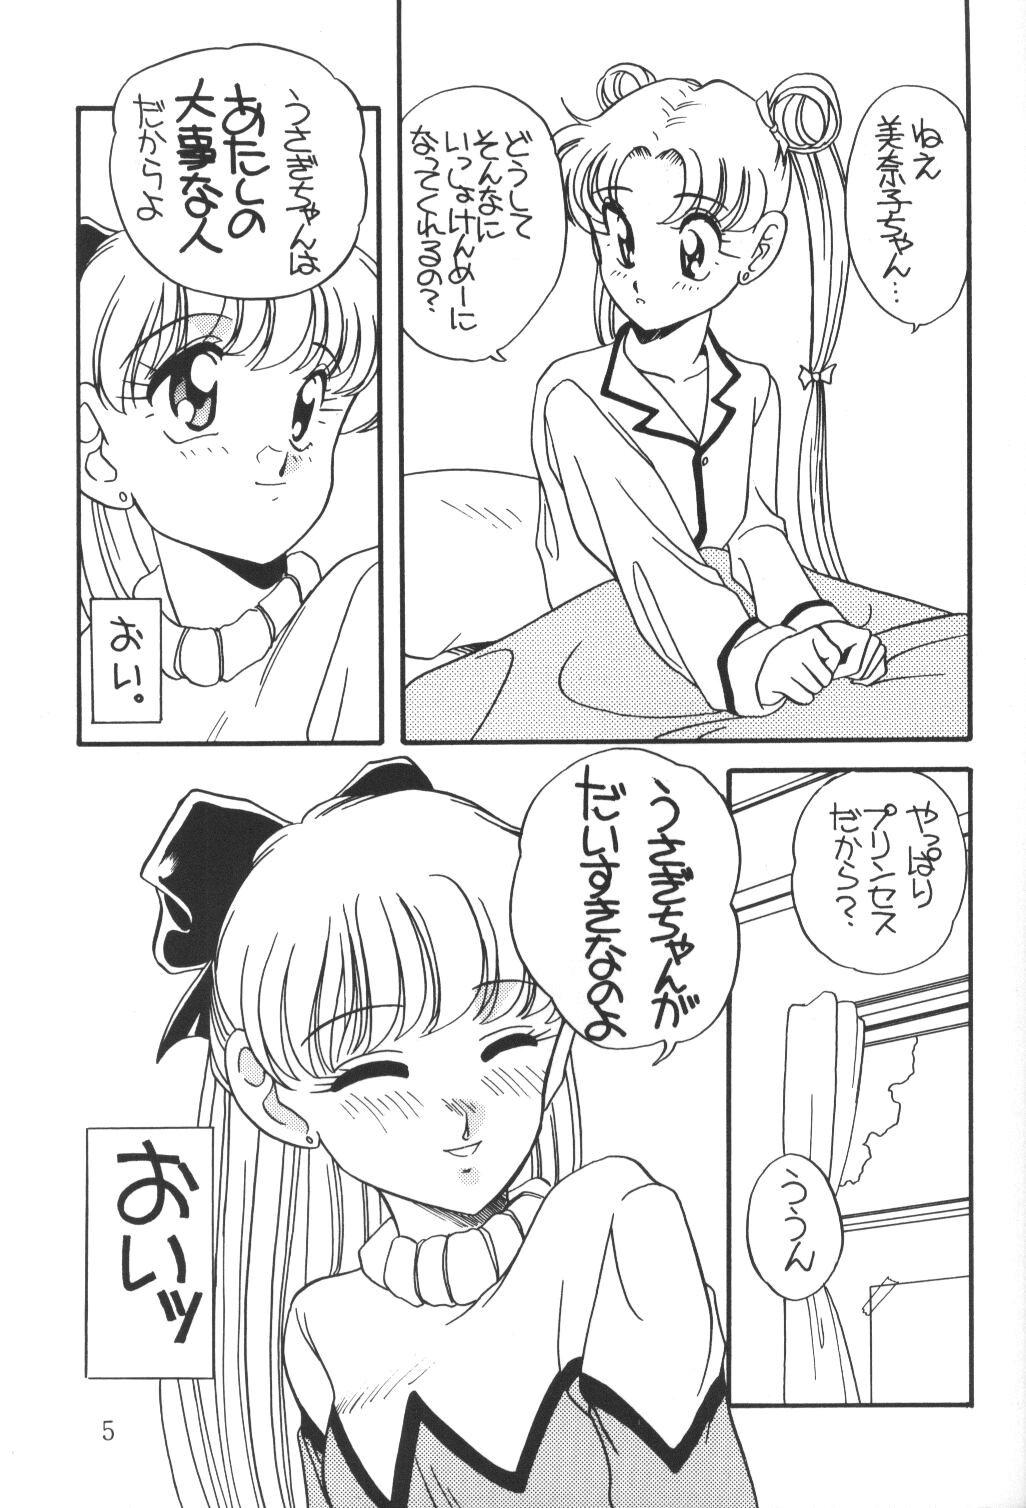 Throatfuck Elfin 9 - Sailor moon Gay Spank - Page 4